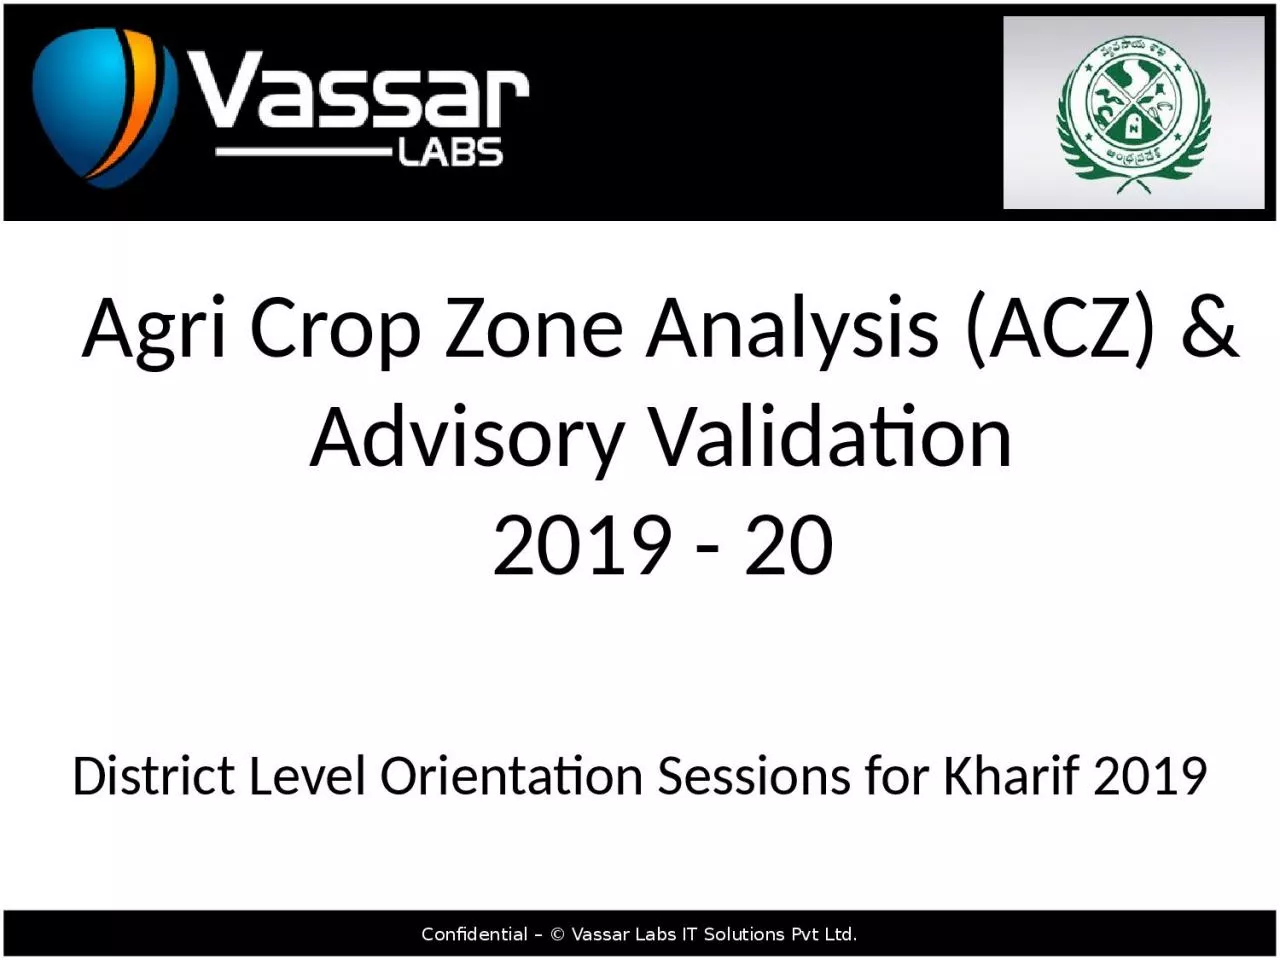 Agri Crop Zone Analysis (ACZ) & Advisory Validation